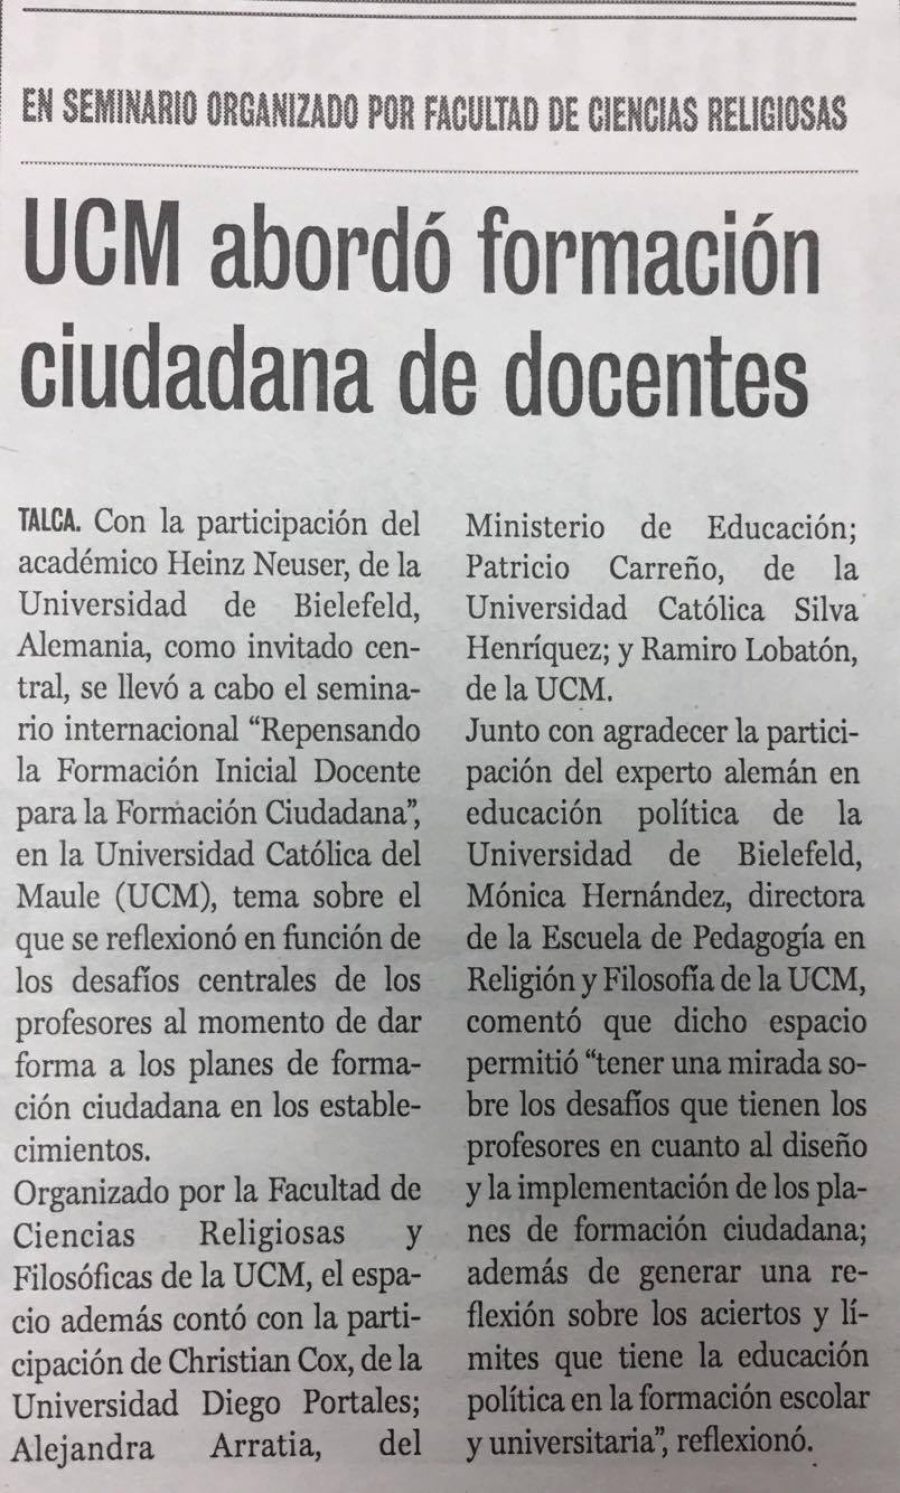 22 de noviembre en Diario La Prensa: “UCM abordó formación ciudadana de docentes”